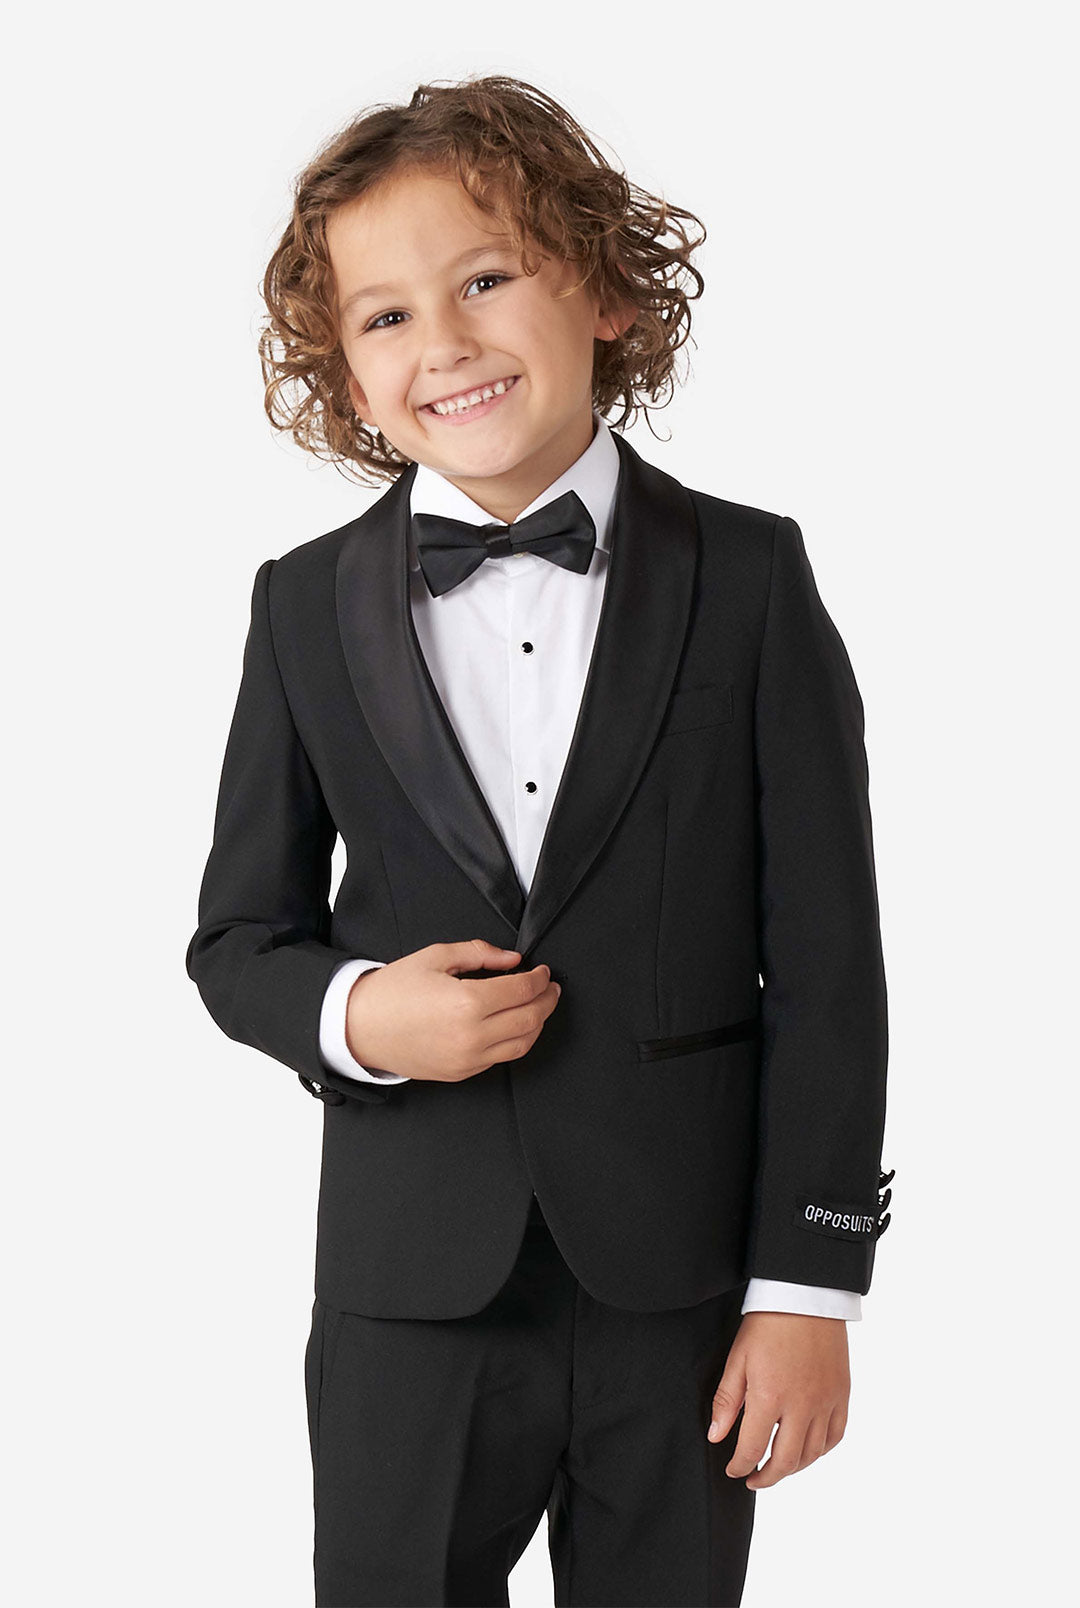 Amazon.com: Black Tuxedo Suit for Boys 2 Pieces Jacquard Shawl Lapel Kids  Formal Suit Set Jacket Pants Size 6: Clothing, Shoes & Jewelry